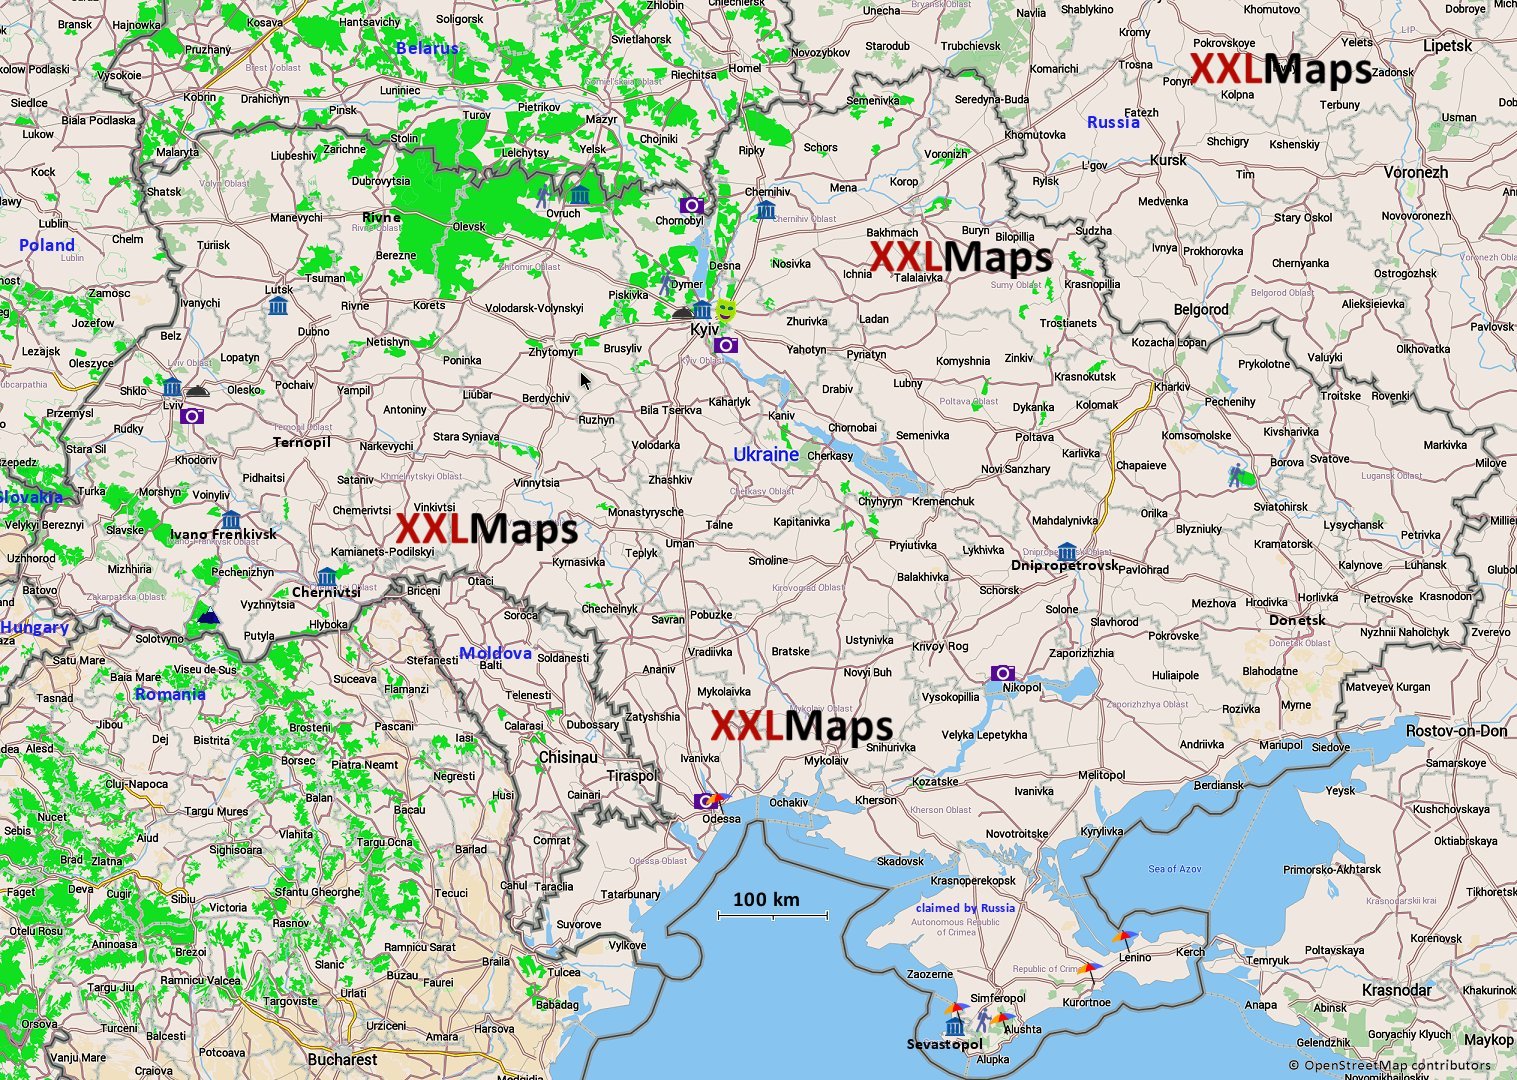 Turist kart over Ukraina